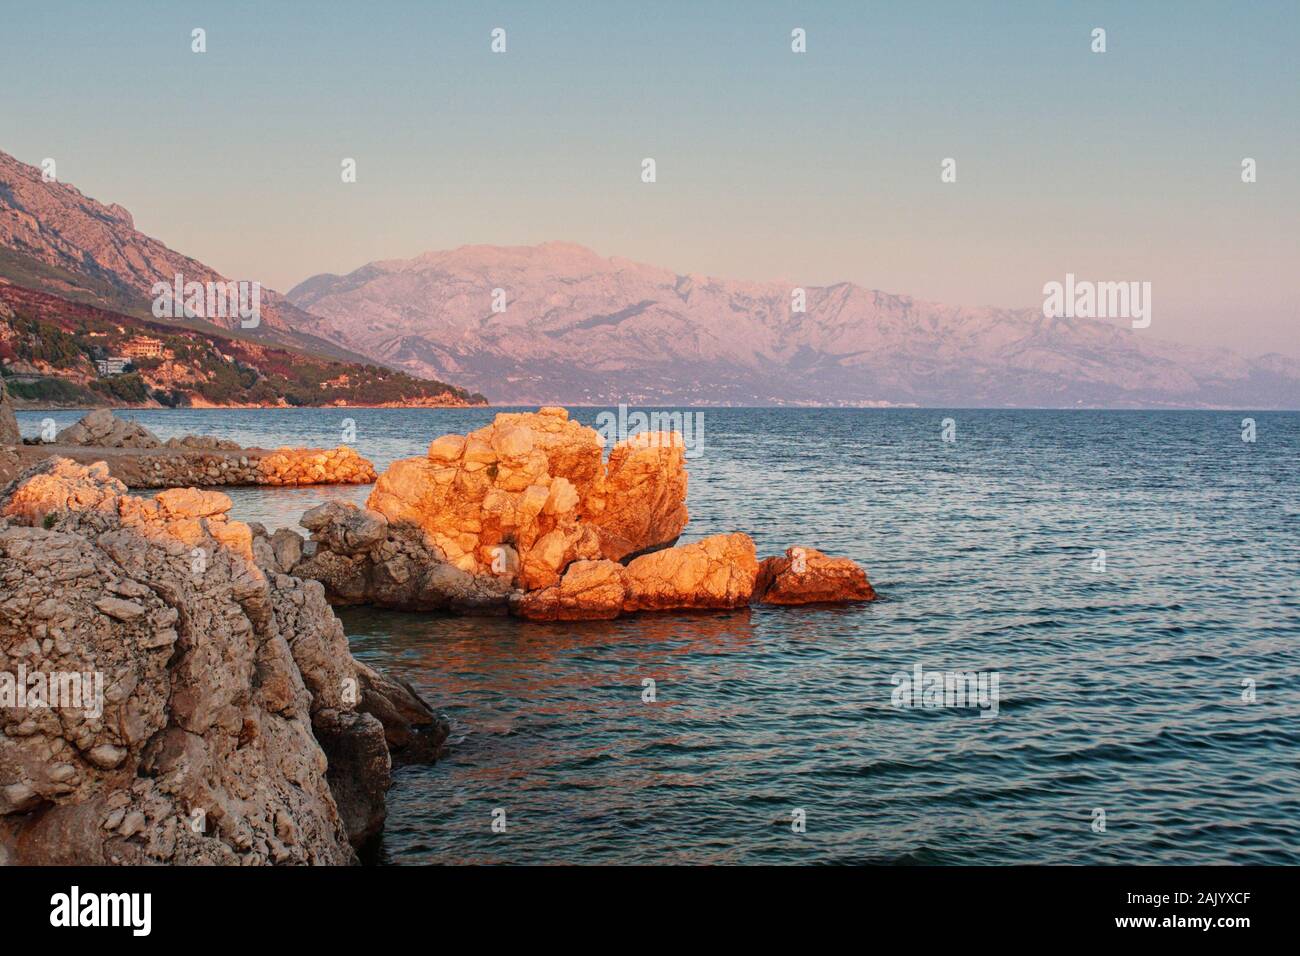 Côte rocheuse de la mer croate, mer et roche en premier plan, falaises et montagnes en arrière-plan, illuminées par le soleil couchant Banque D'Images